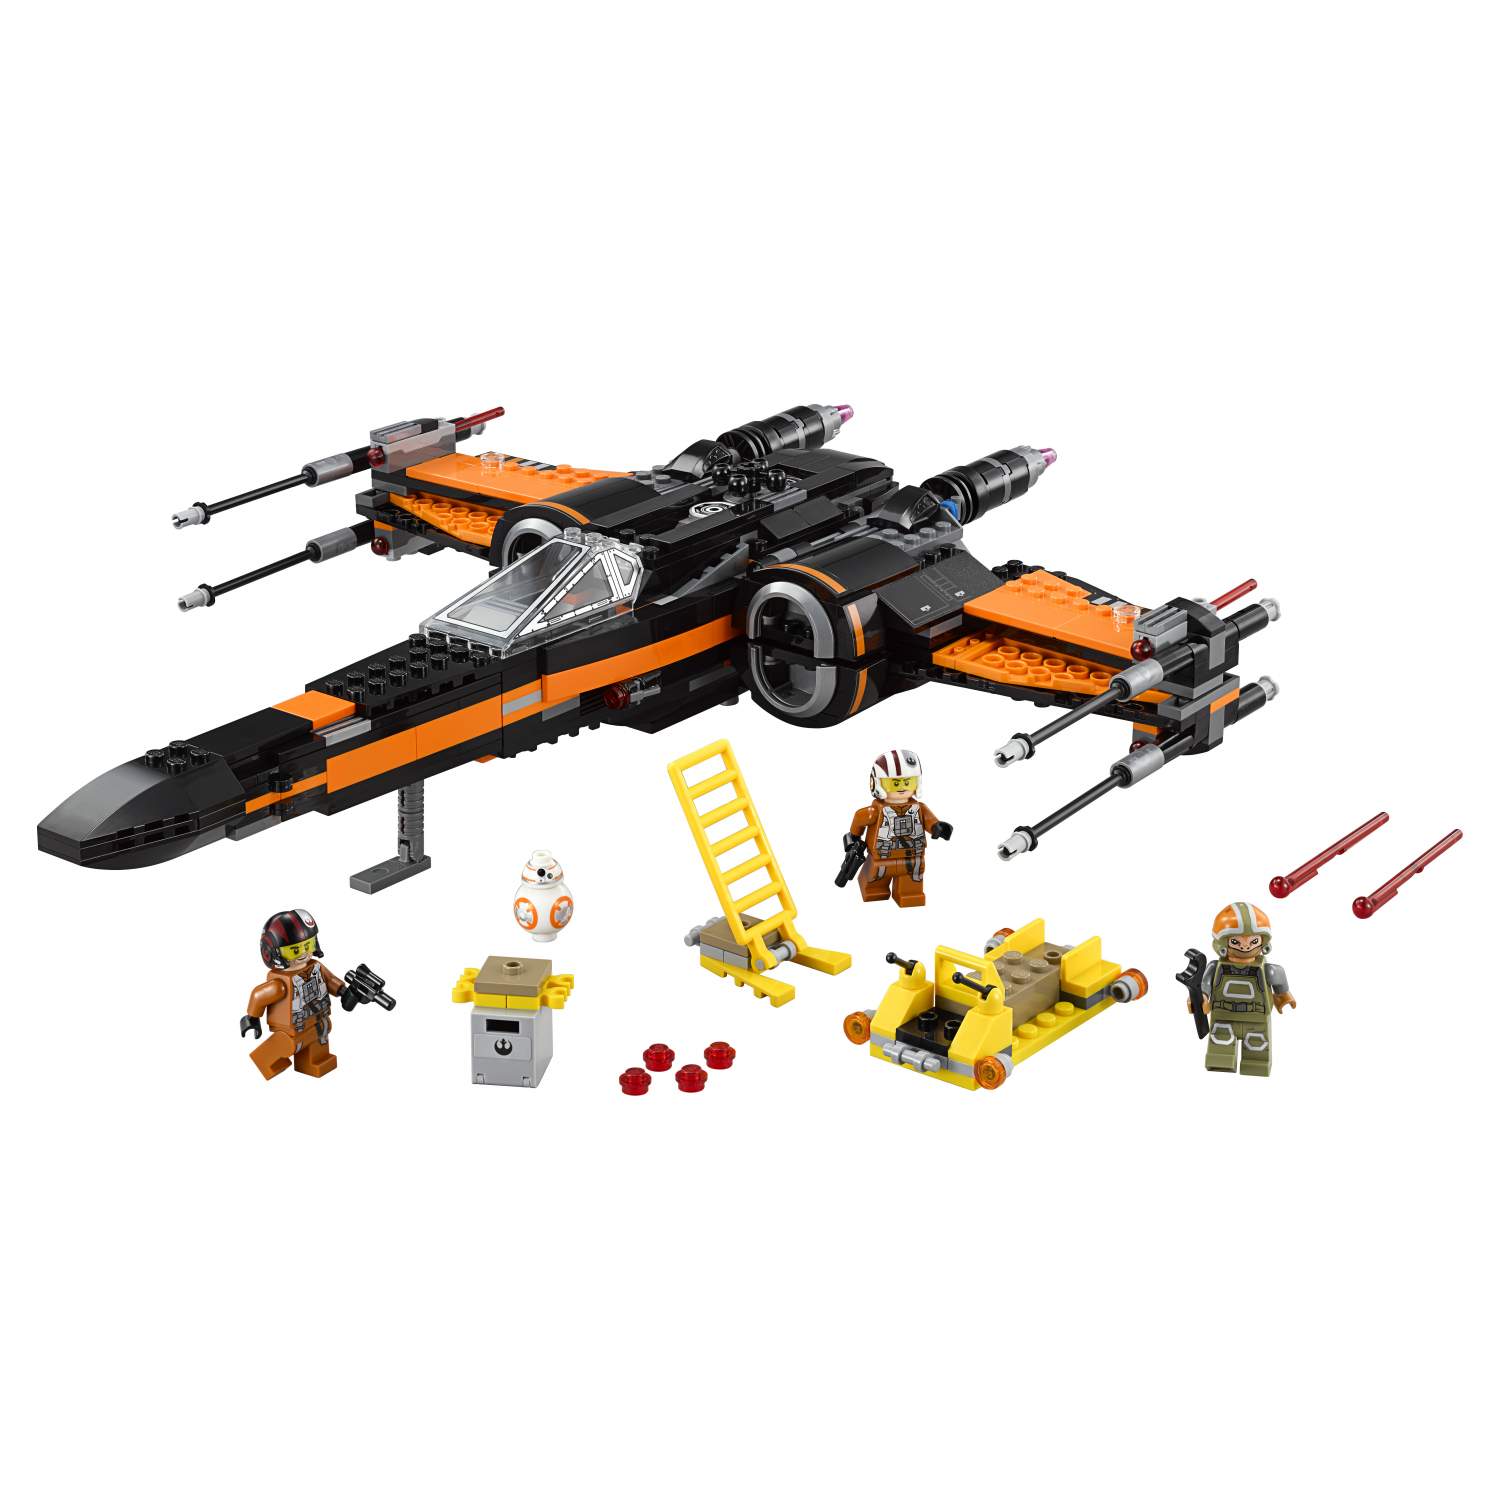 Отзывы о конструктор LEGO Star Wars Истребитель По (Poes X-Wing Fighter) ( 75102) - отзывы покупателей на sbermegamarket.ru | конструкторы LEGO 75102  - 100000075469